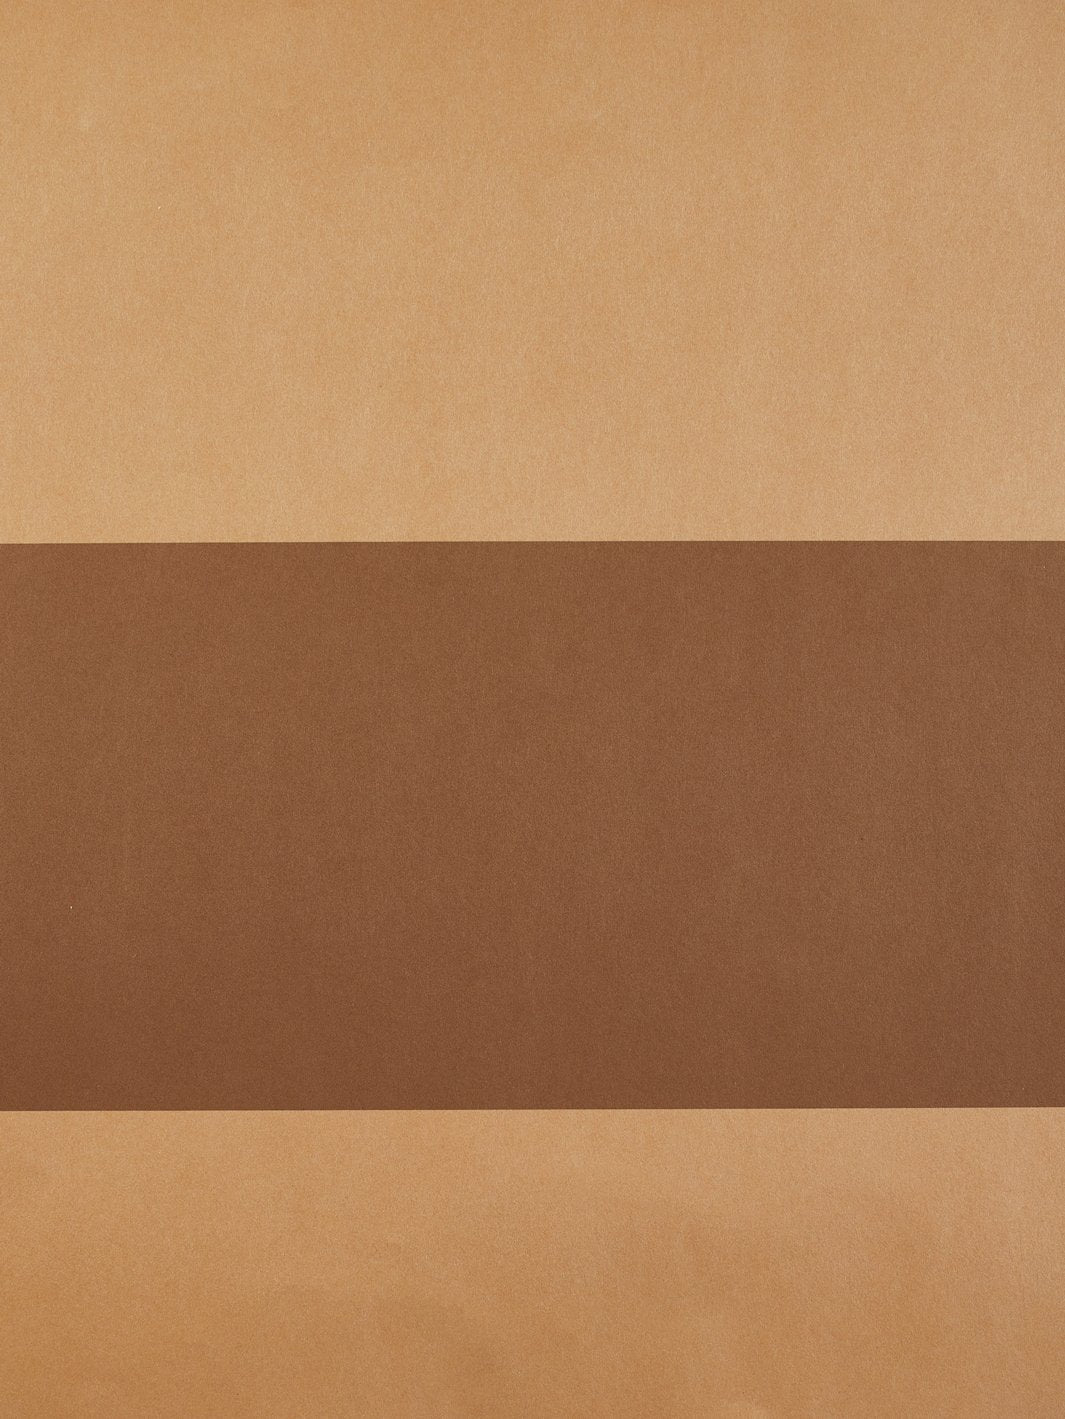 'Wide Stripe' Kraft' Wallpaper by Wallshoppe - Leather